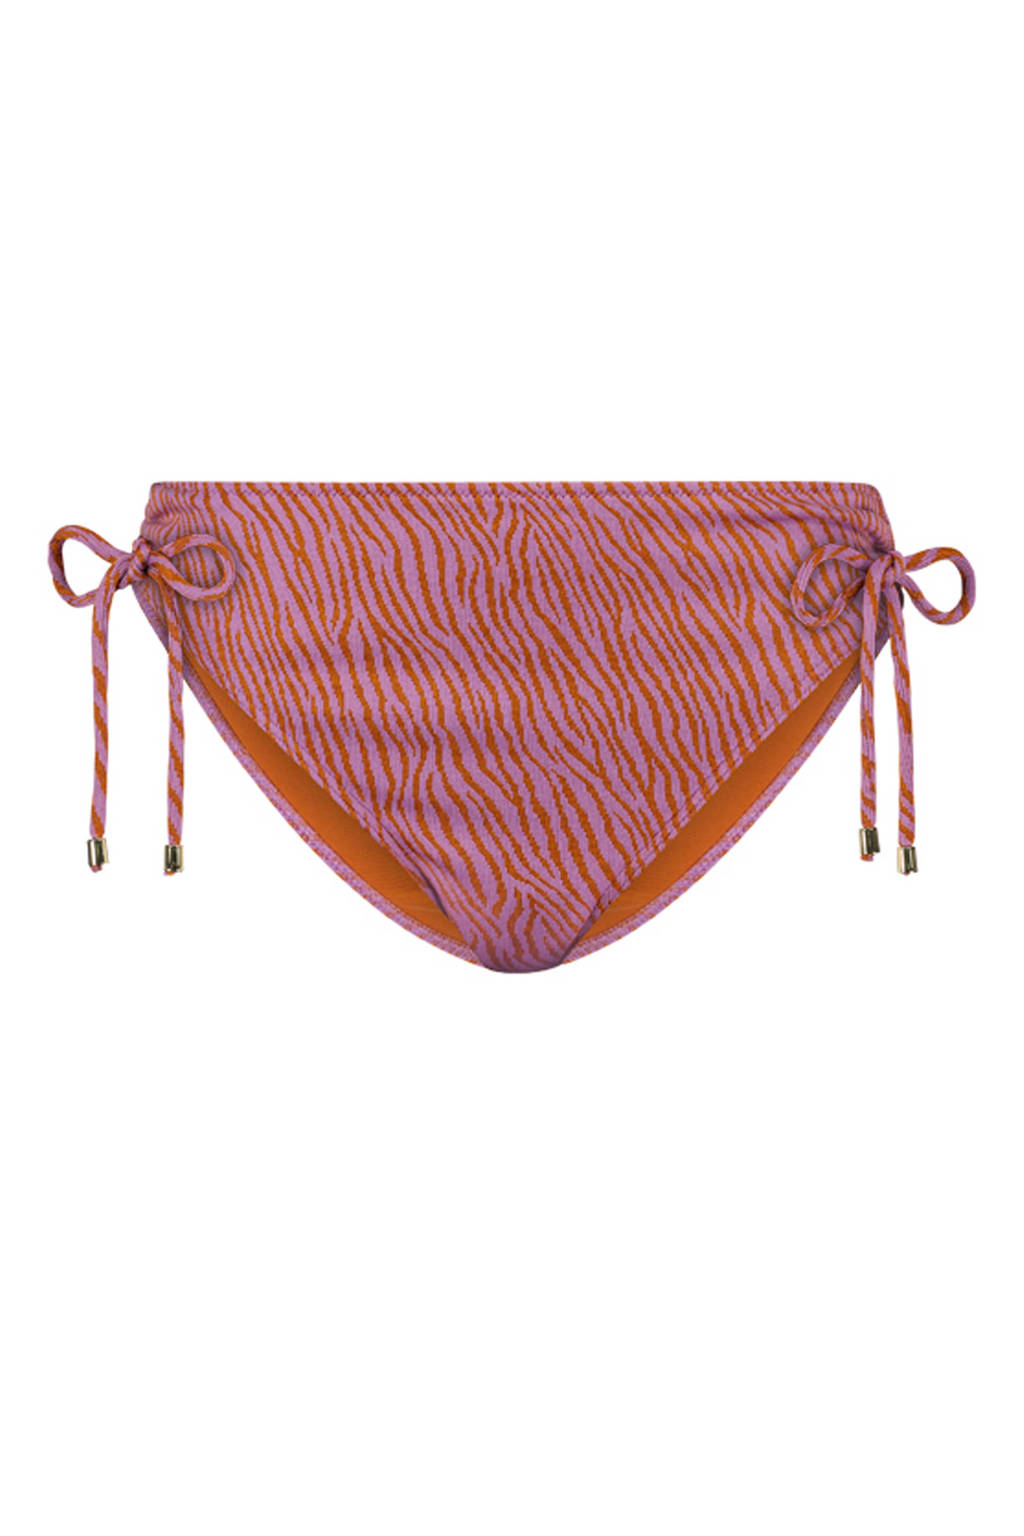 Cyell high waist bikinibroekje Zumba Zebra roze/oranje